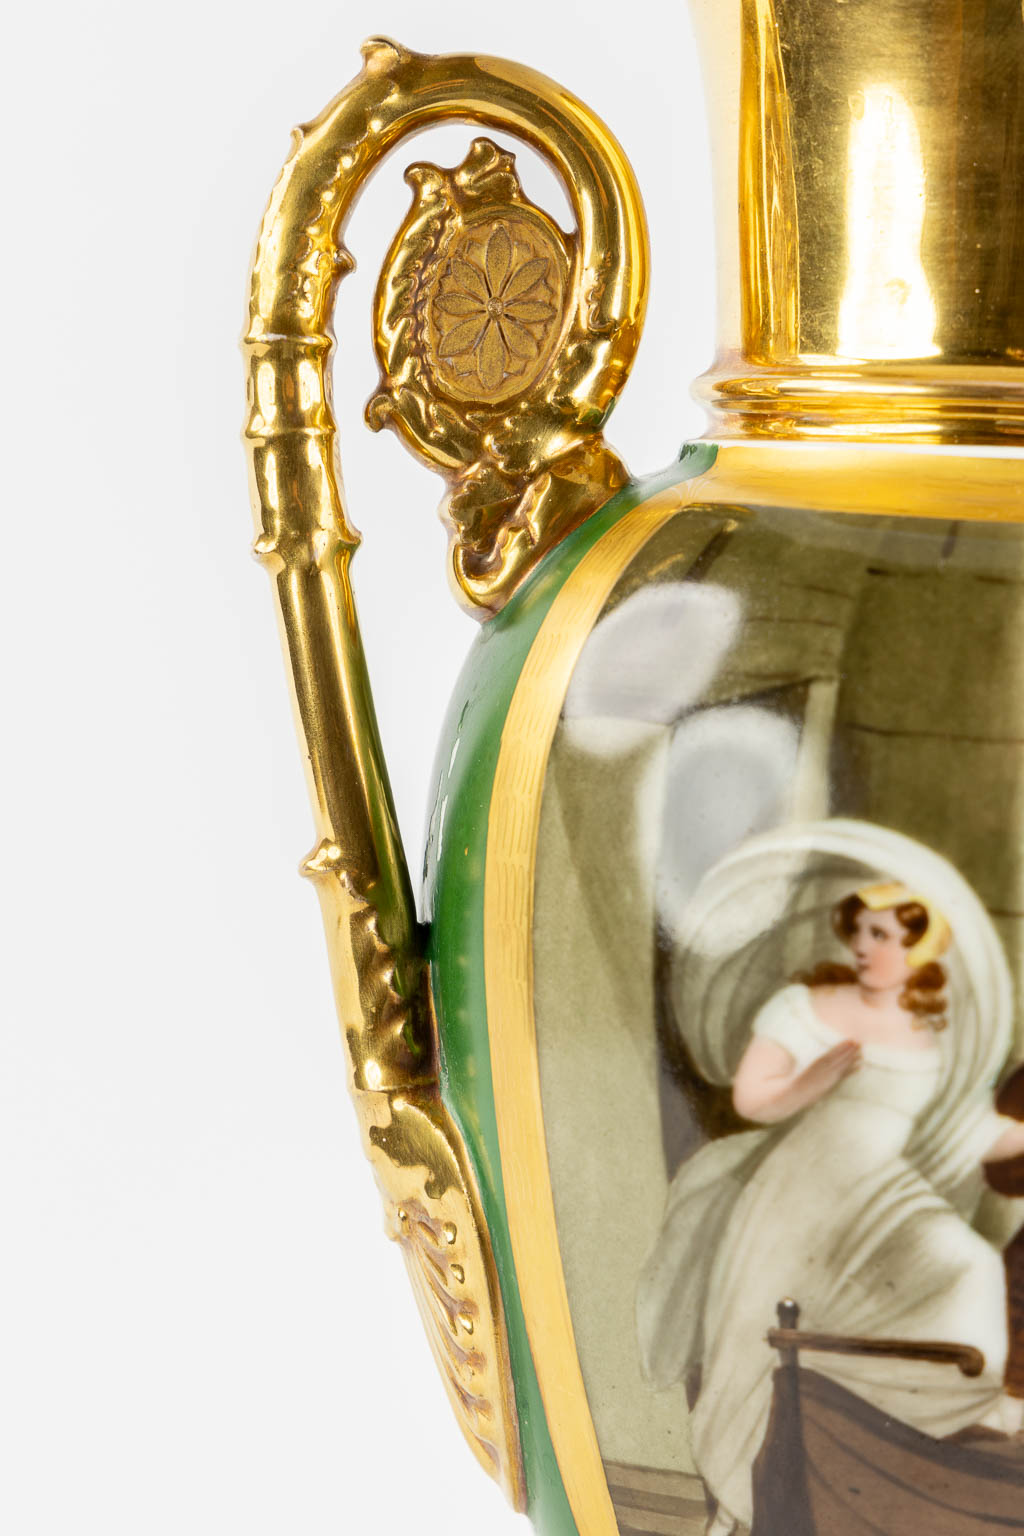 A pair of Vieux Paris vases, Empire style. 19th C. (L:15 x W:20 x H:38,5 cm)